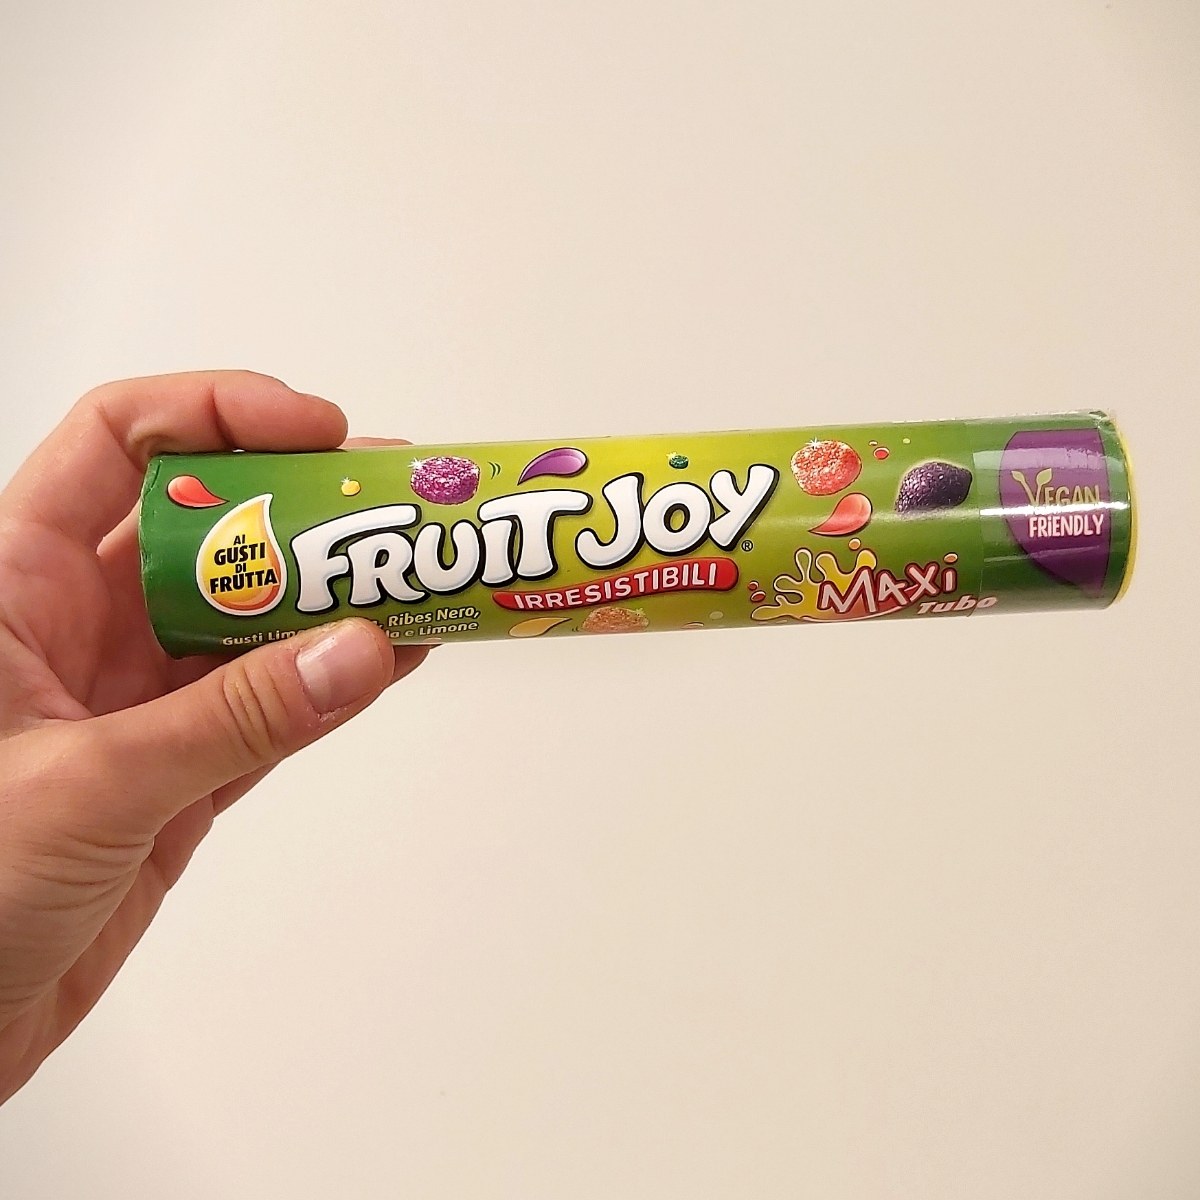 Fruit Joy Fruit Joy Original 评价| abillion